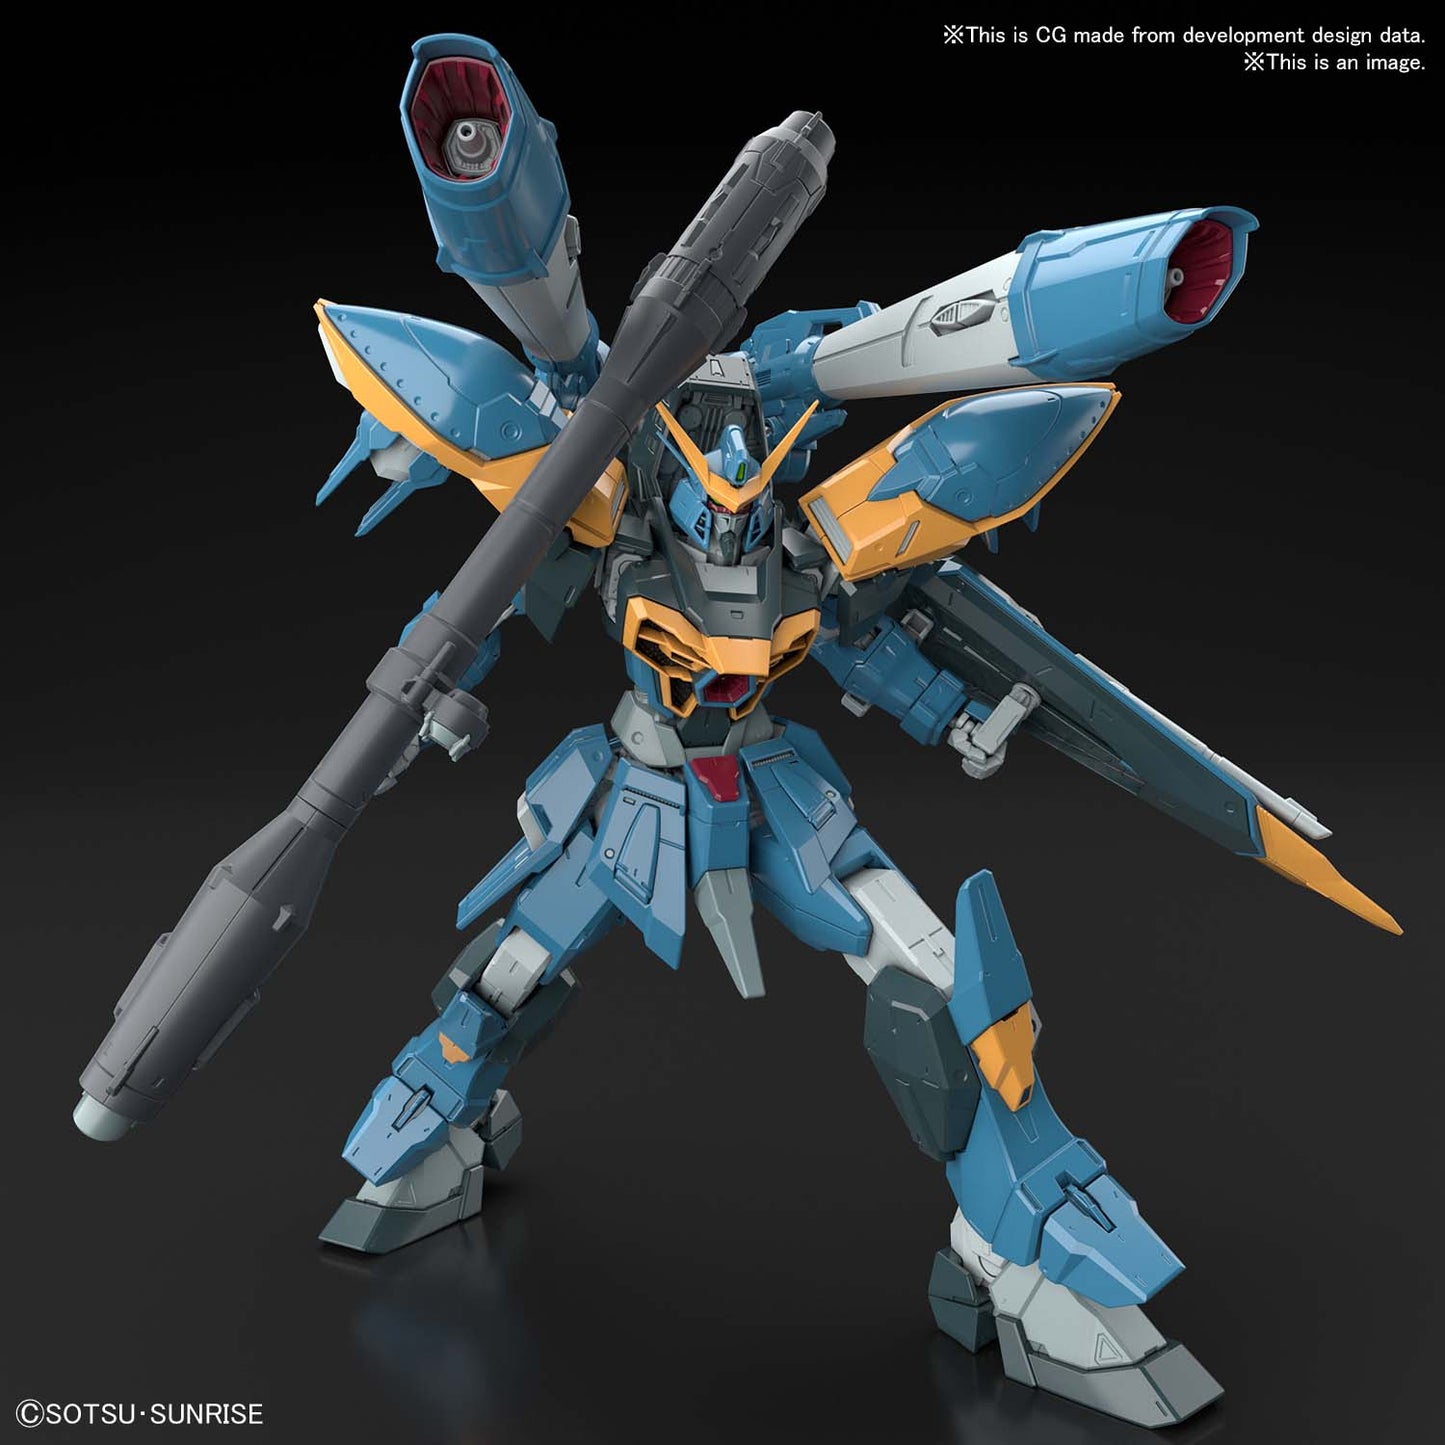 1/100 Full Mechanics GAT-X131 Calamity Gundam